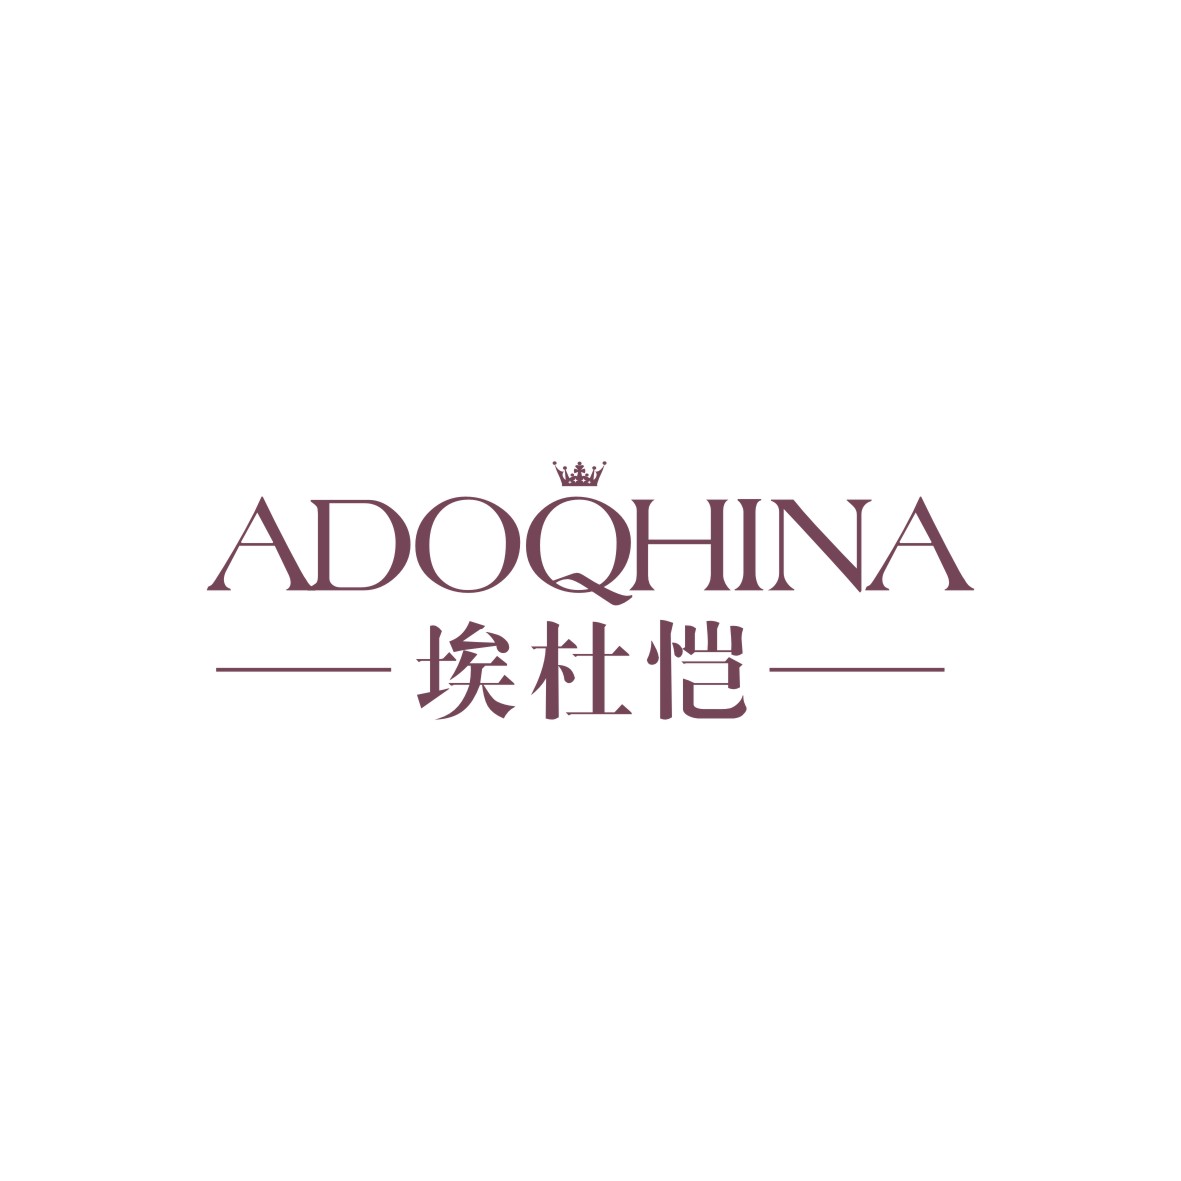 广州品翰文化发展有限公司商标埃杜恺 ADOQHINA（25类）商标买卖平台报价，上哪个平台最省钱？